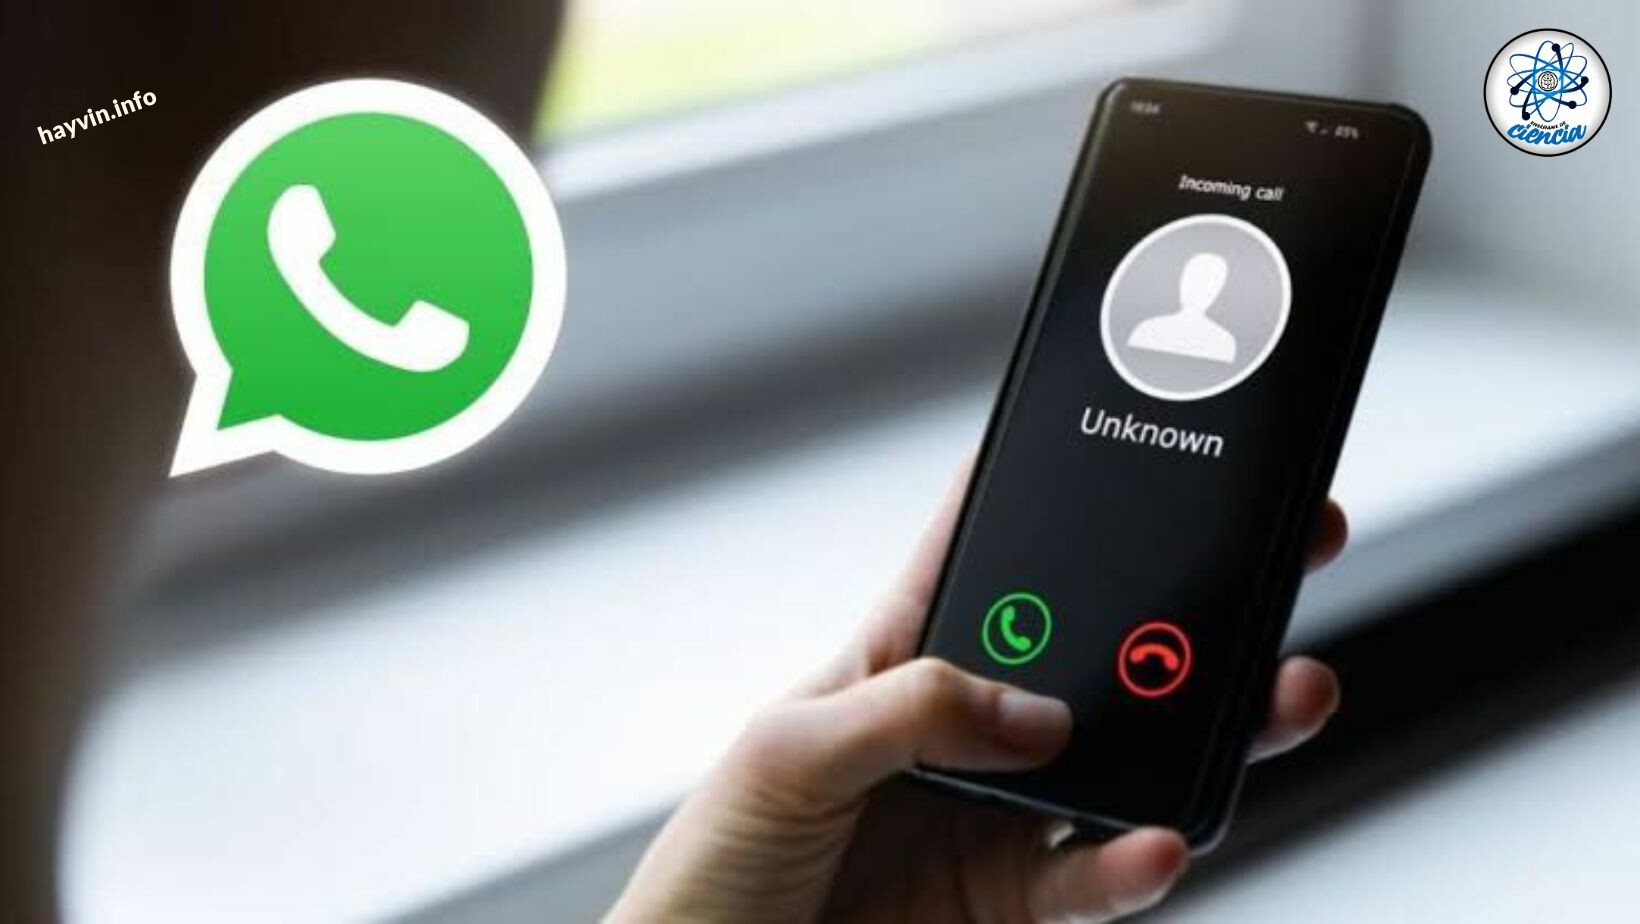 WhatsApp: Kap ismeretlen hívásokat nemzetközi számokról? Ezt kell tennie